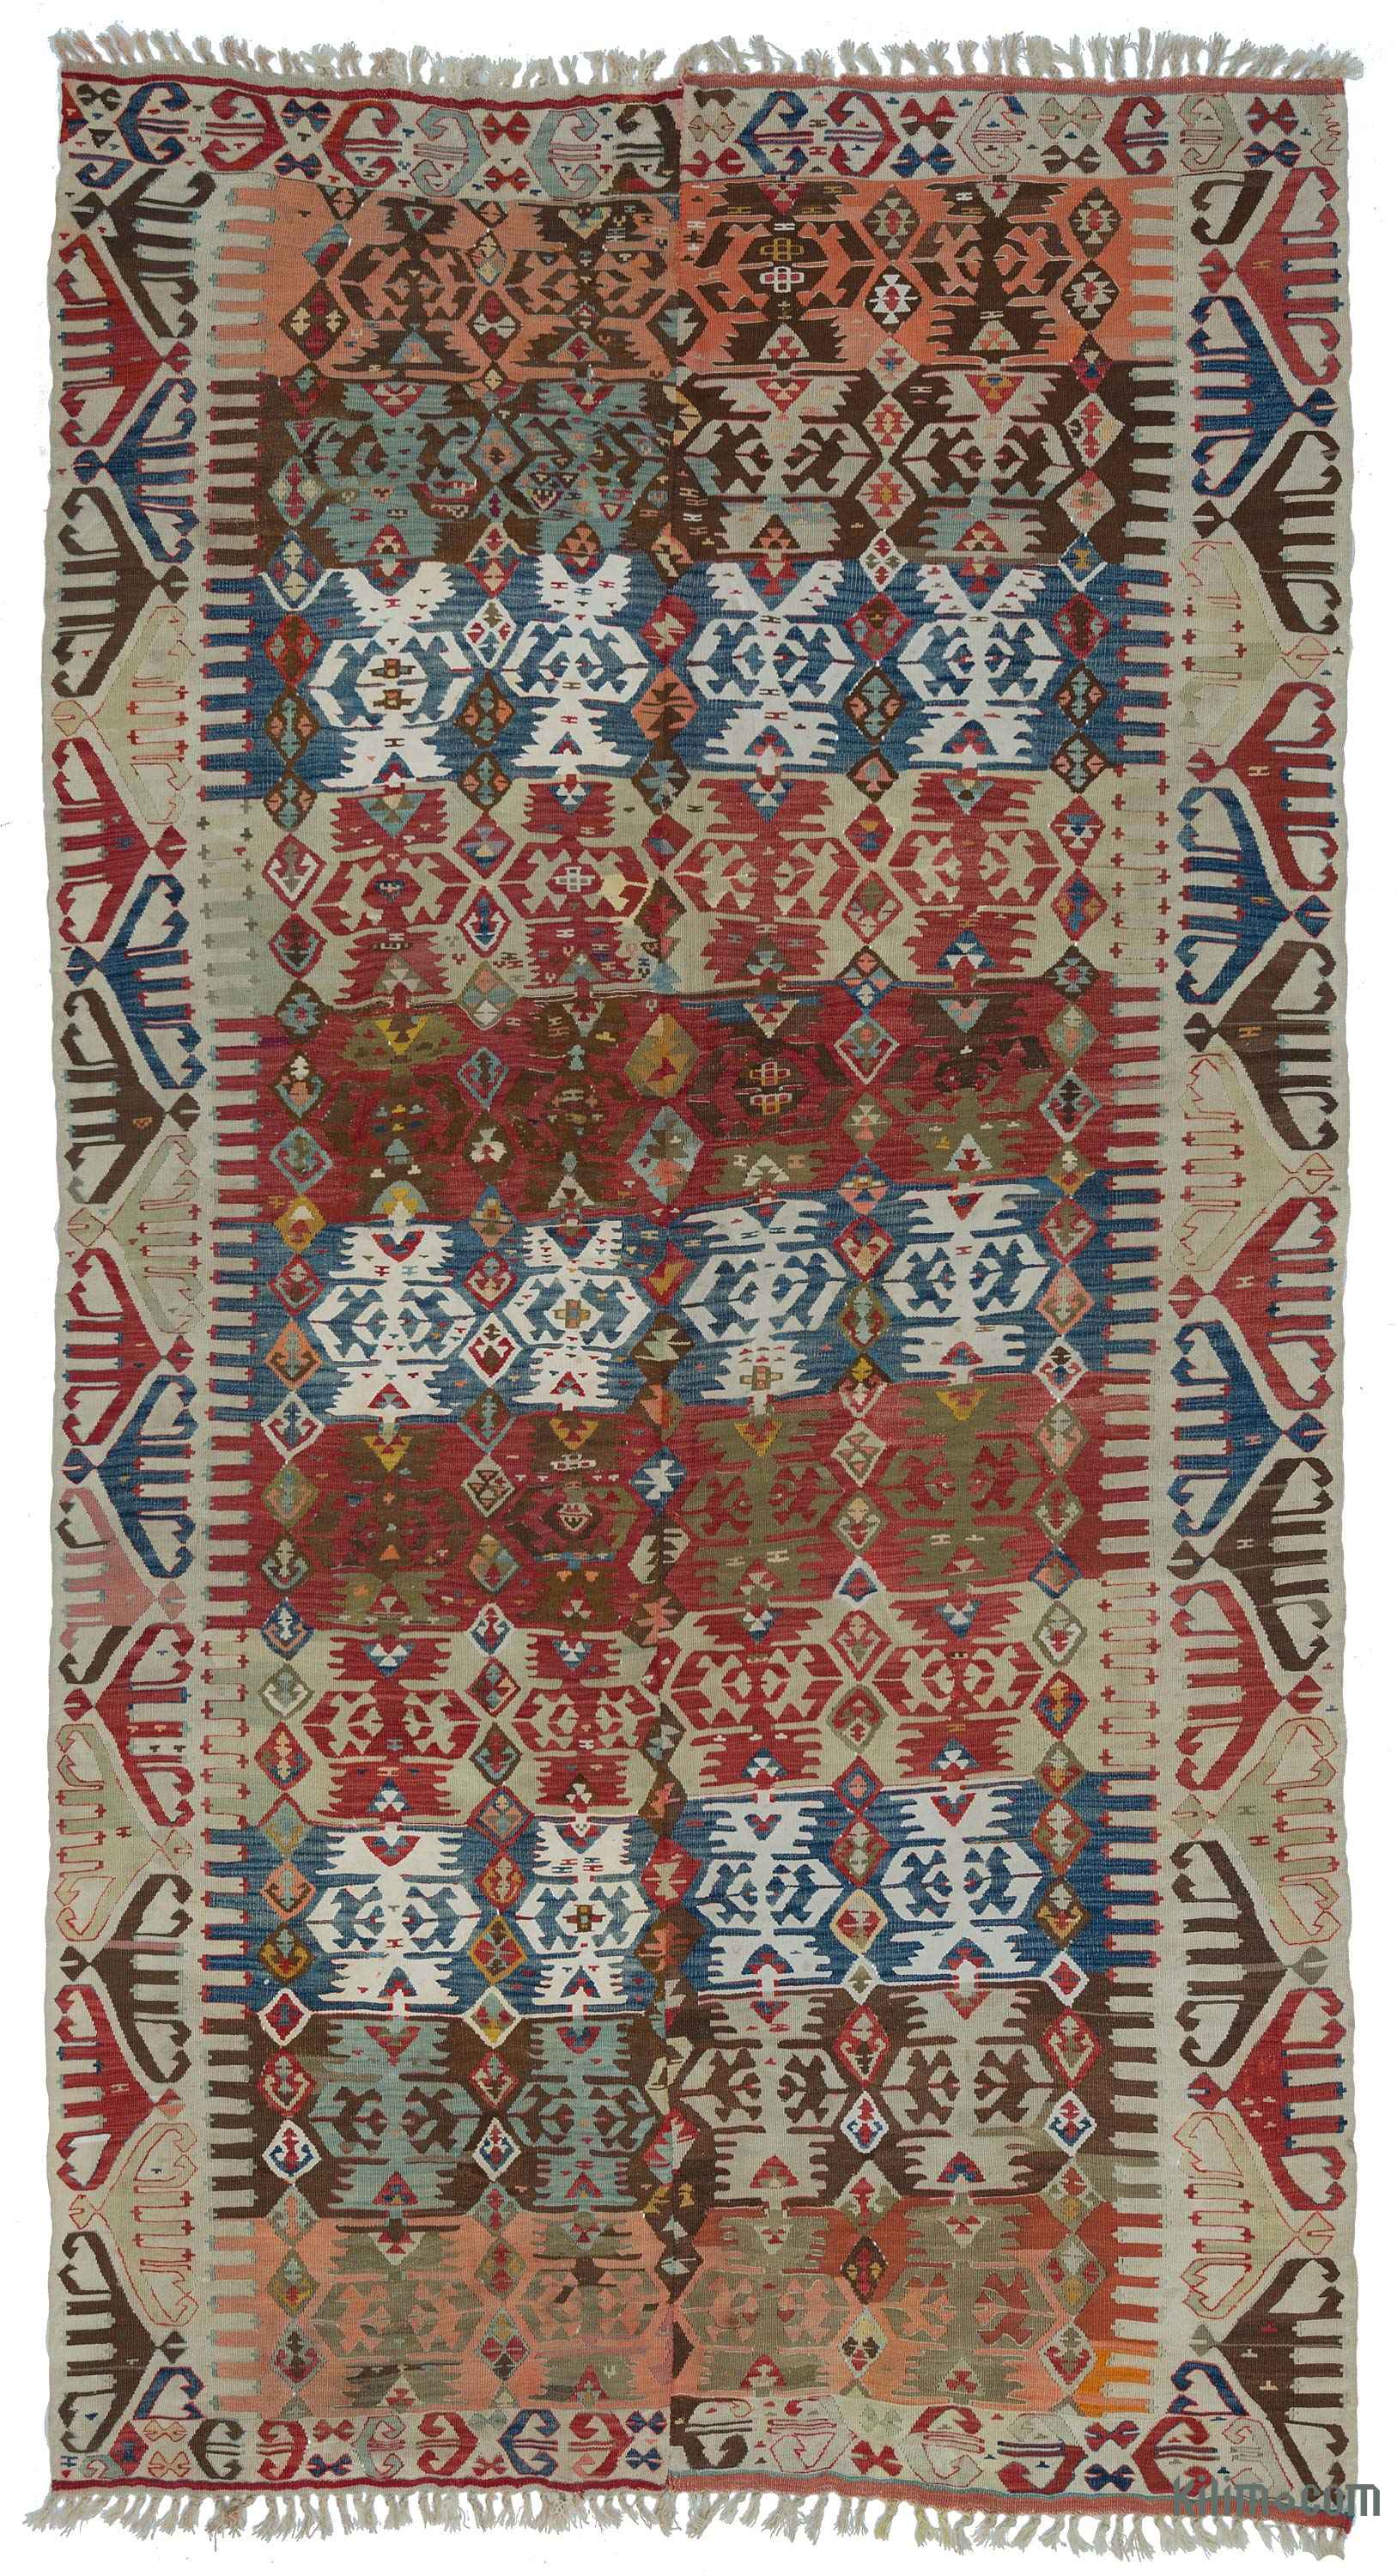 Handmade Rug Weaving Kilim Kelim Antique,Vintage Rug Turkish kilim 2.3 x 4.7 Feet 71 x 144 cm Handwoven Kilim